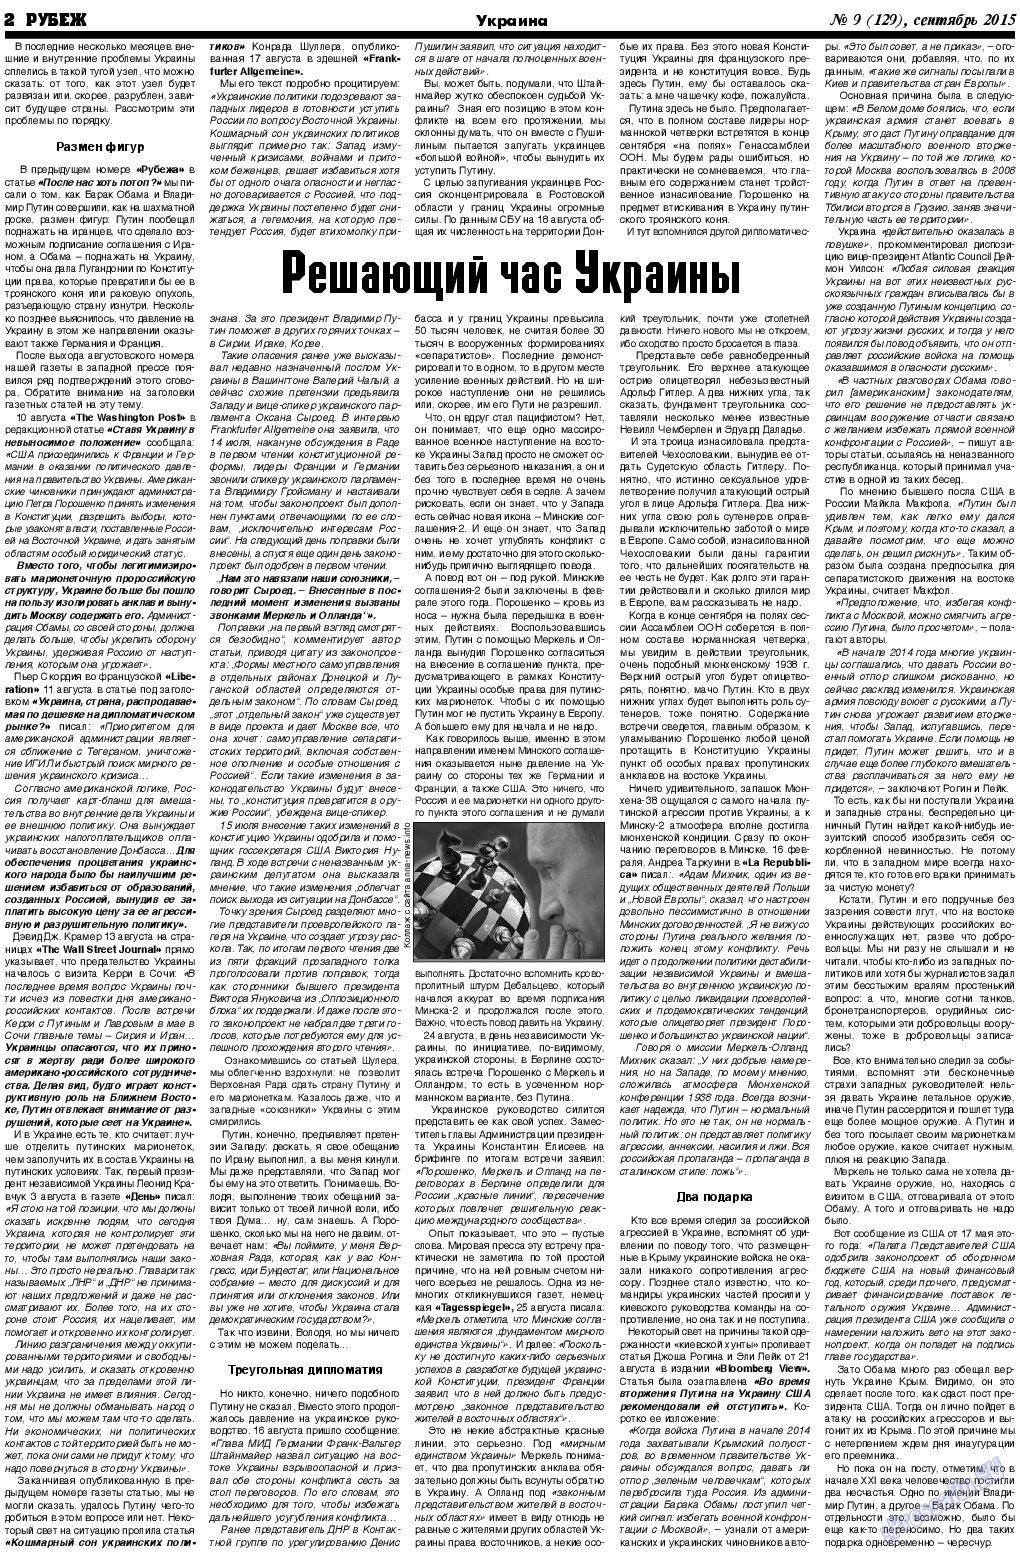 Рубеж (газета). 2015 год, номер 9, стр. 2